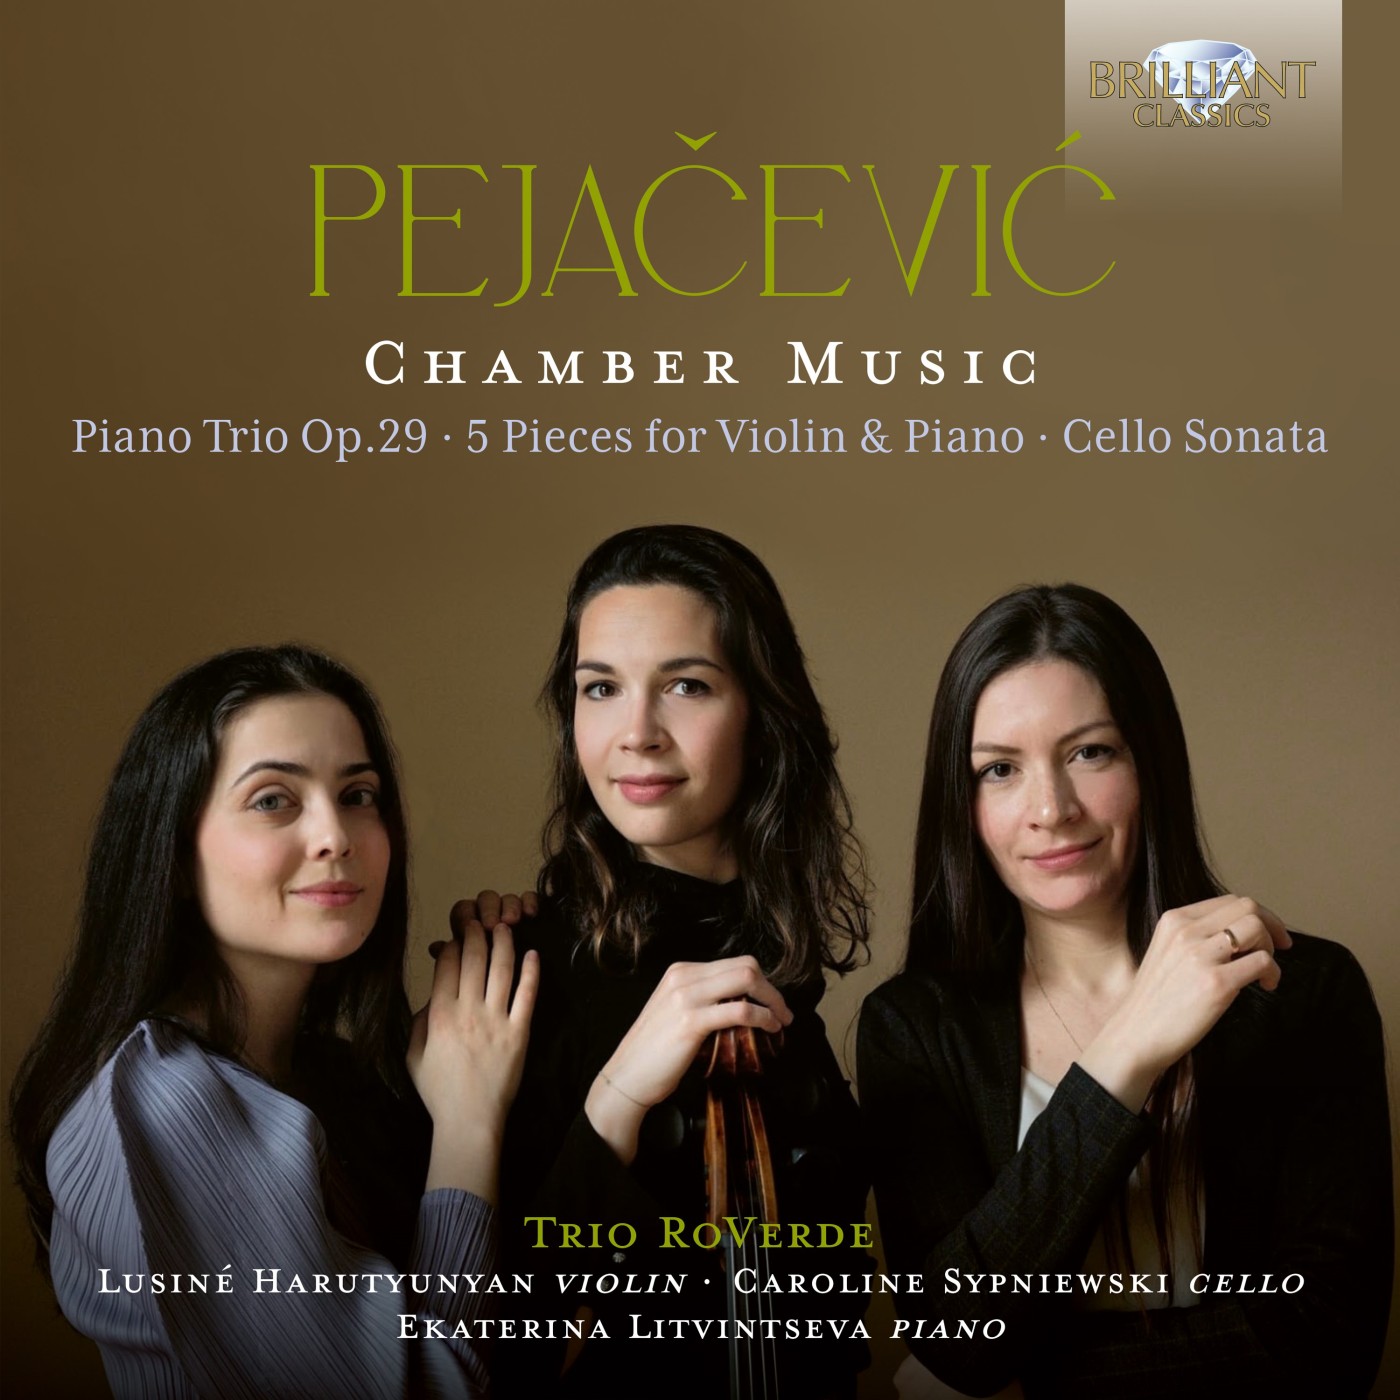 Dora Pejačević trio roverde kammermusik